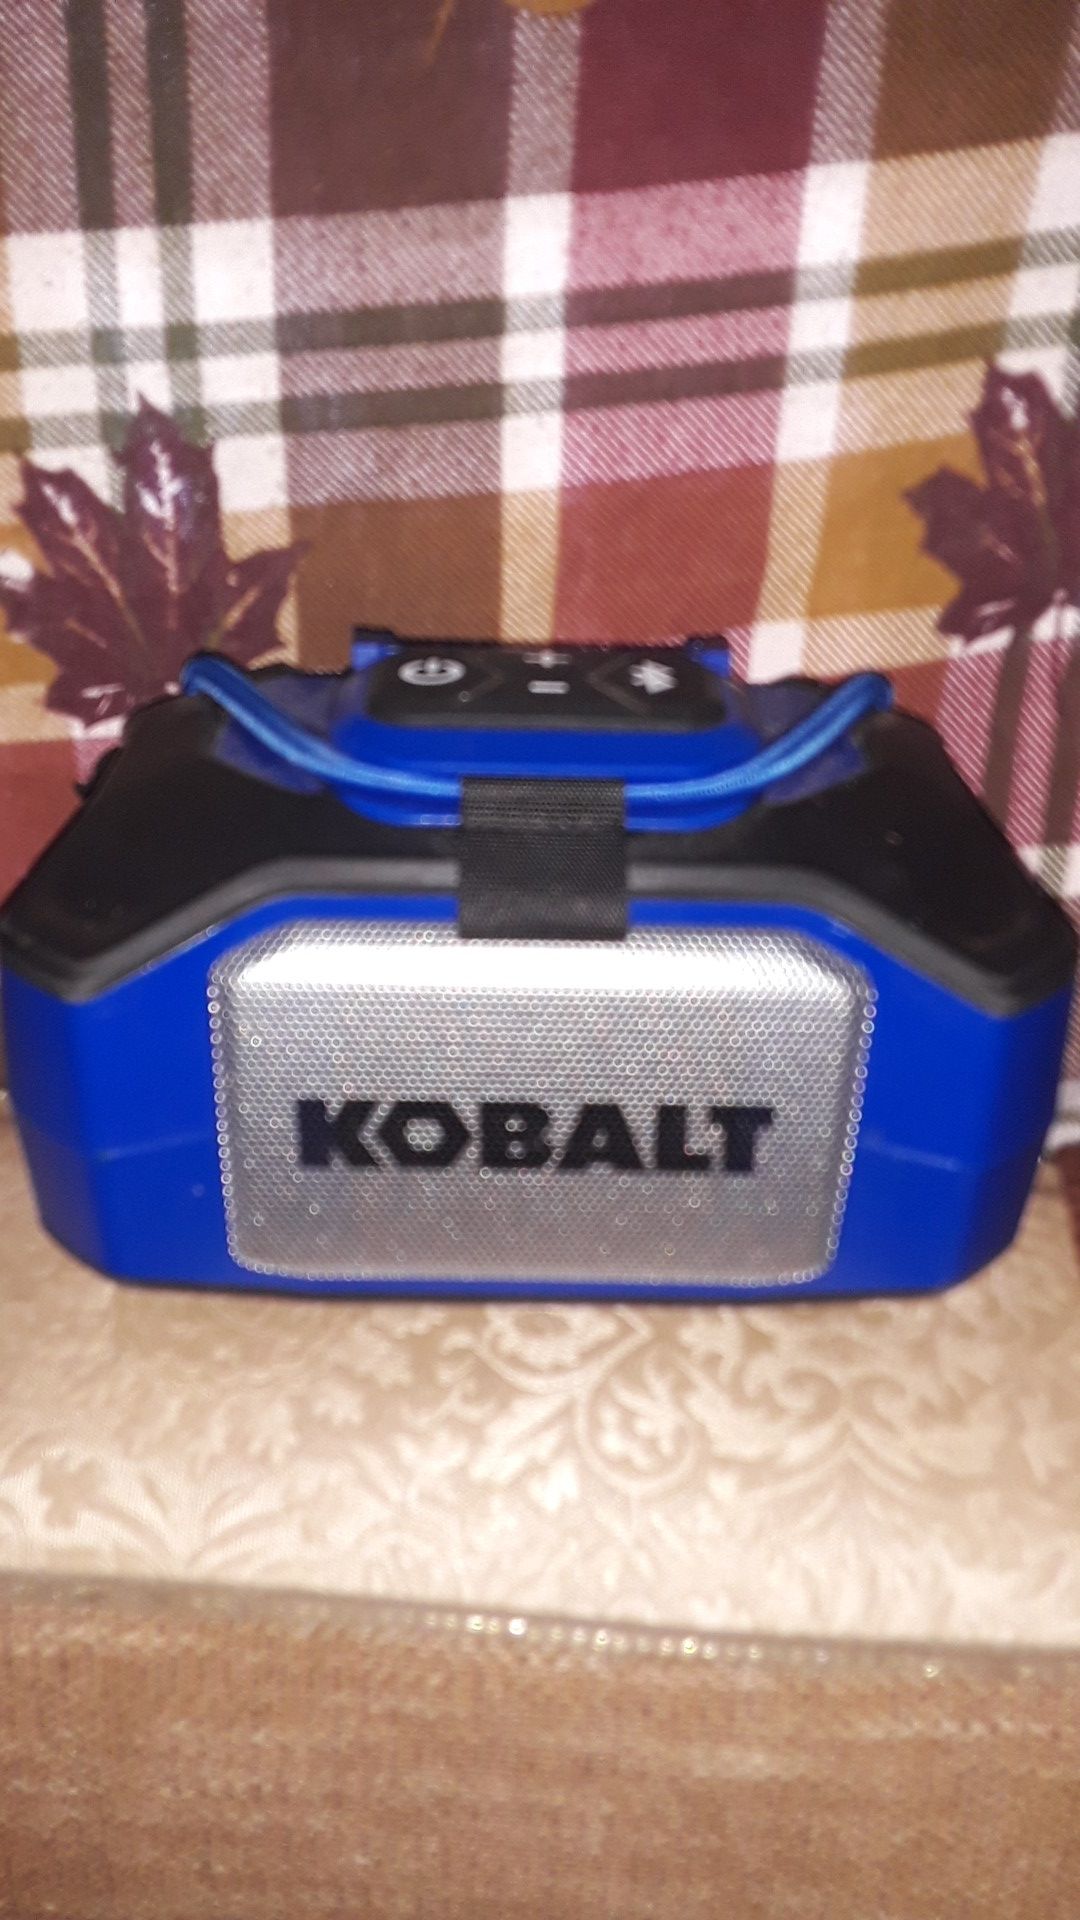 Kobalt bluetooth speaker